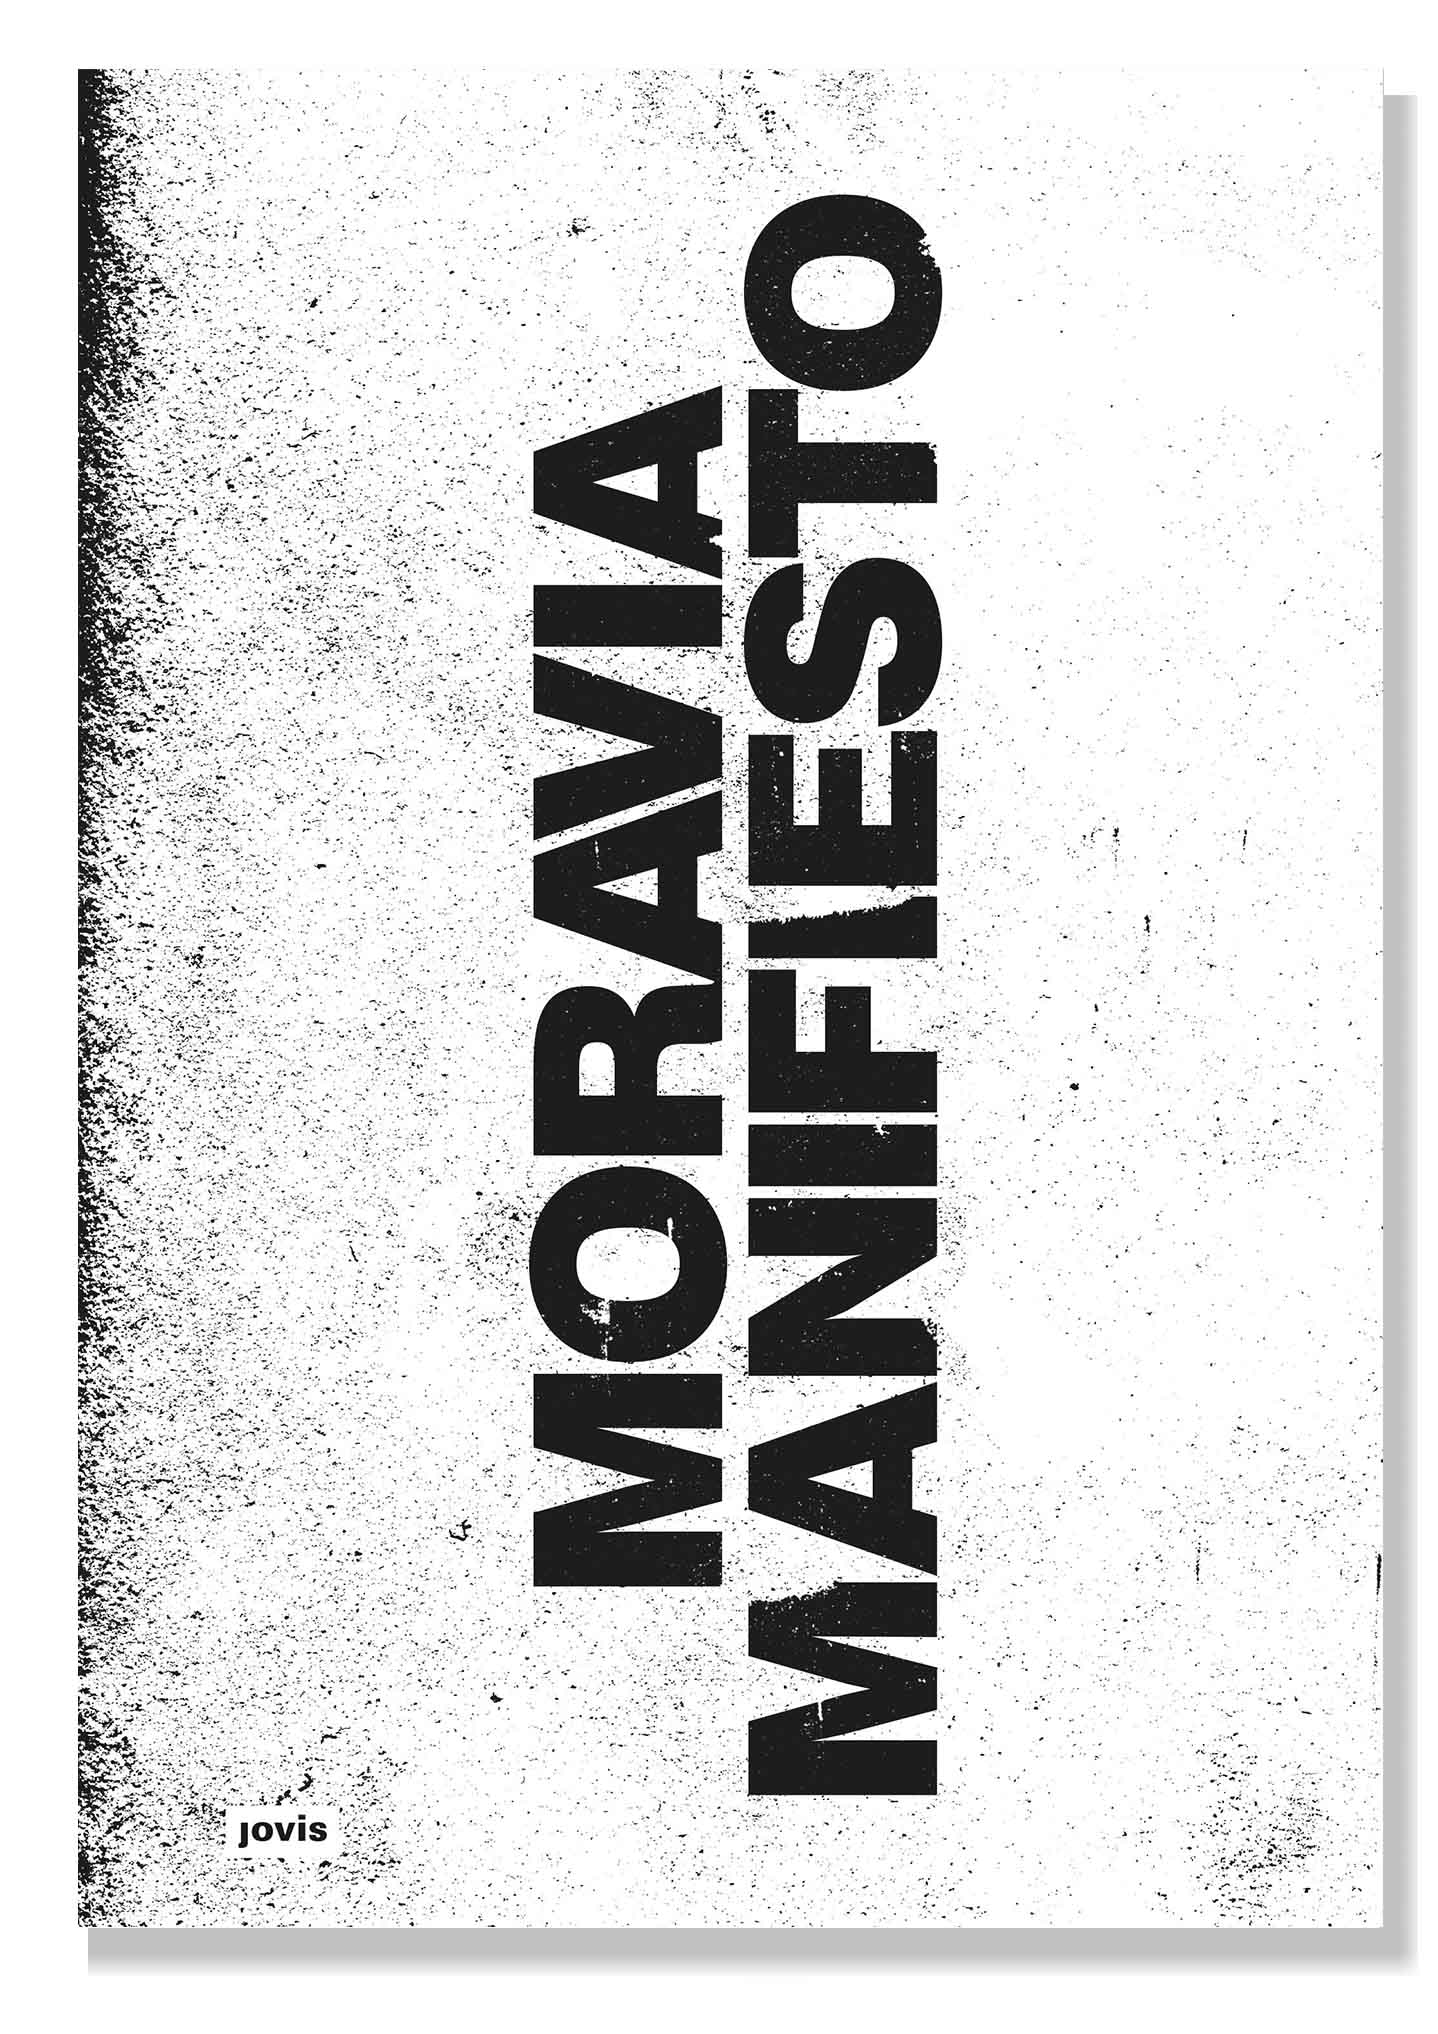 Moravia Manifiesto_cover